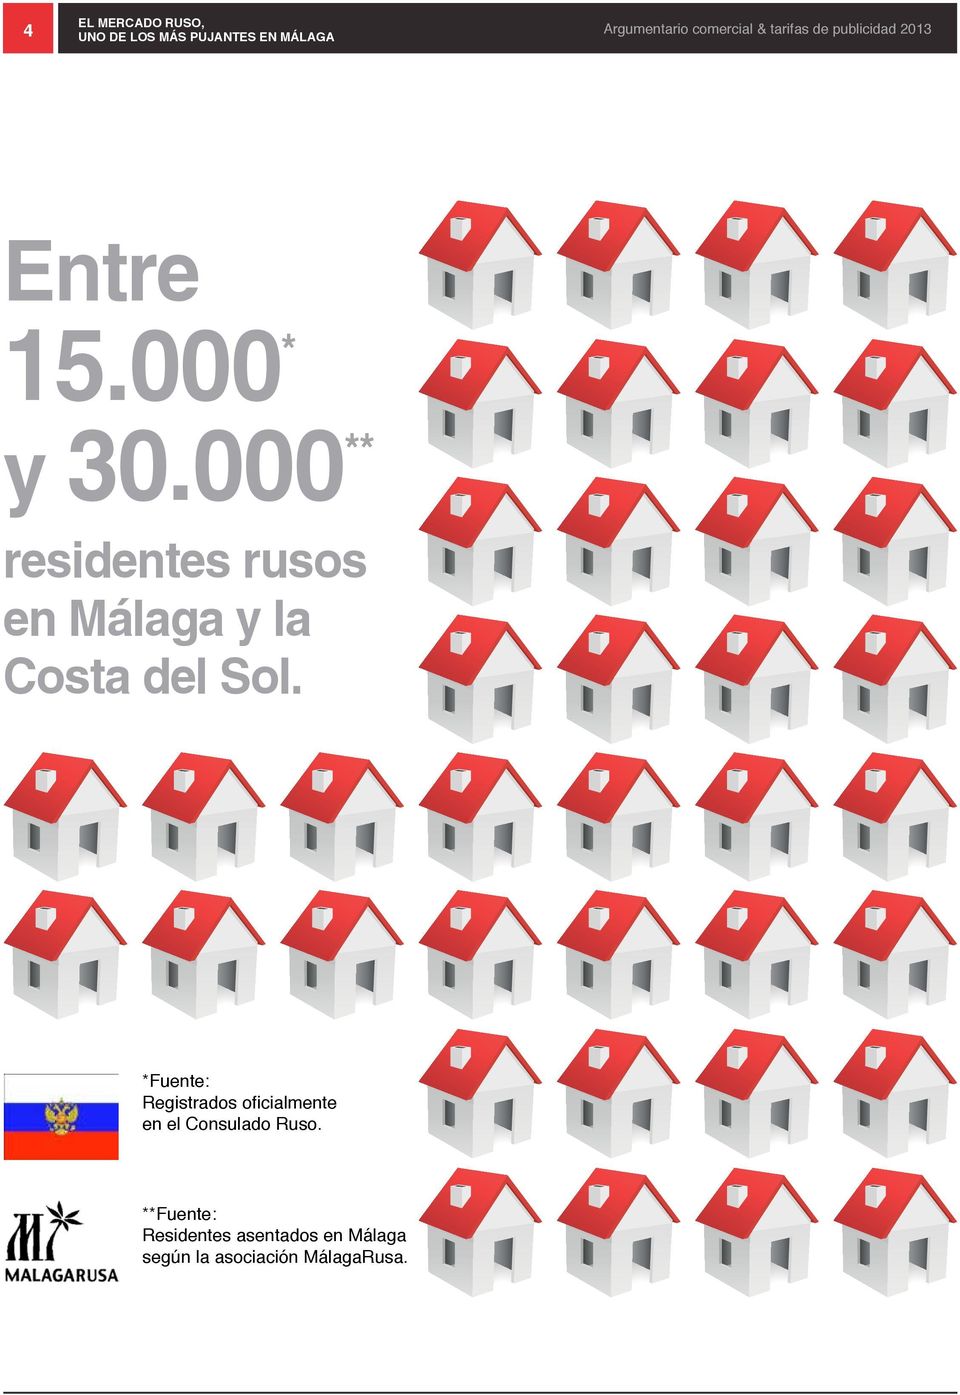 000 ** residentes rusos en Málaga y la Costa del Sol.